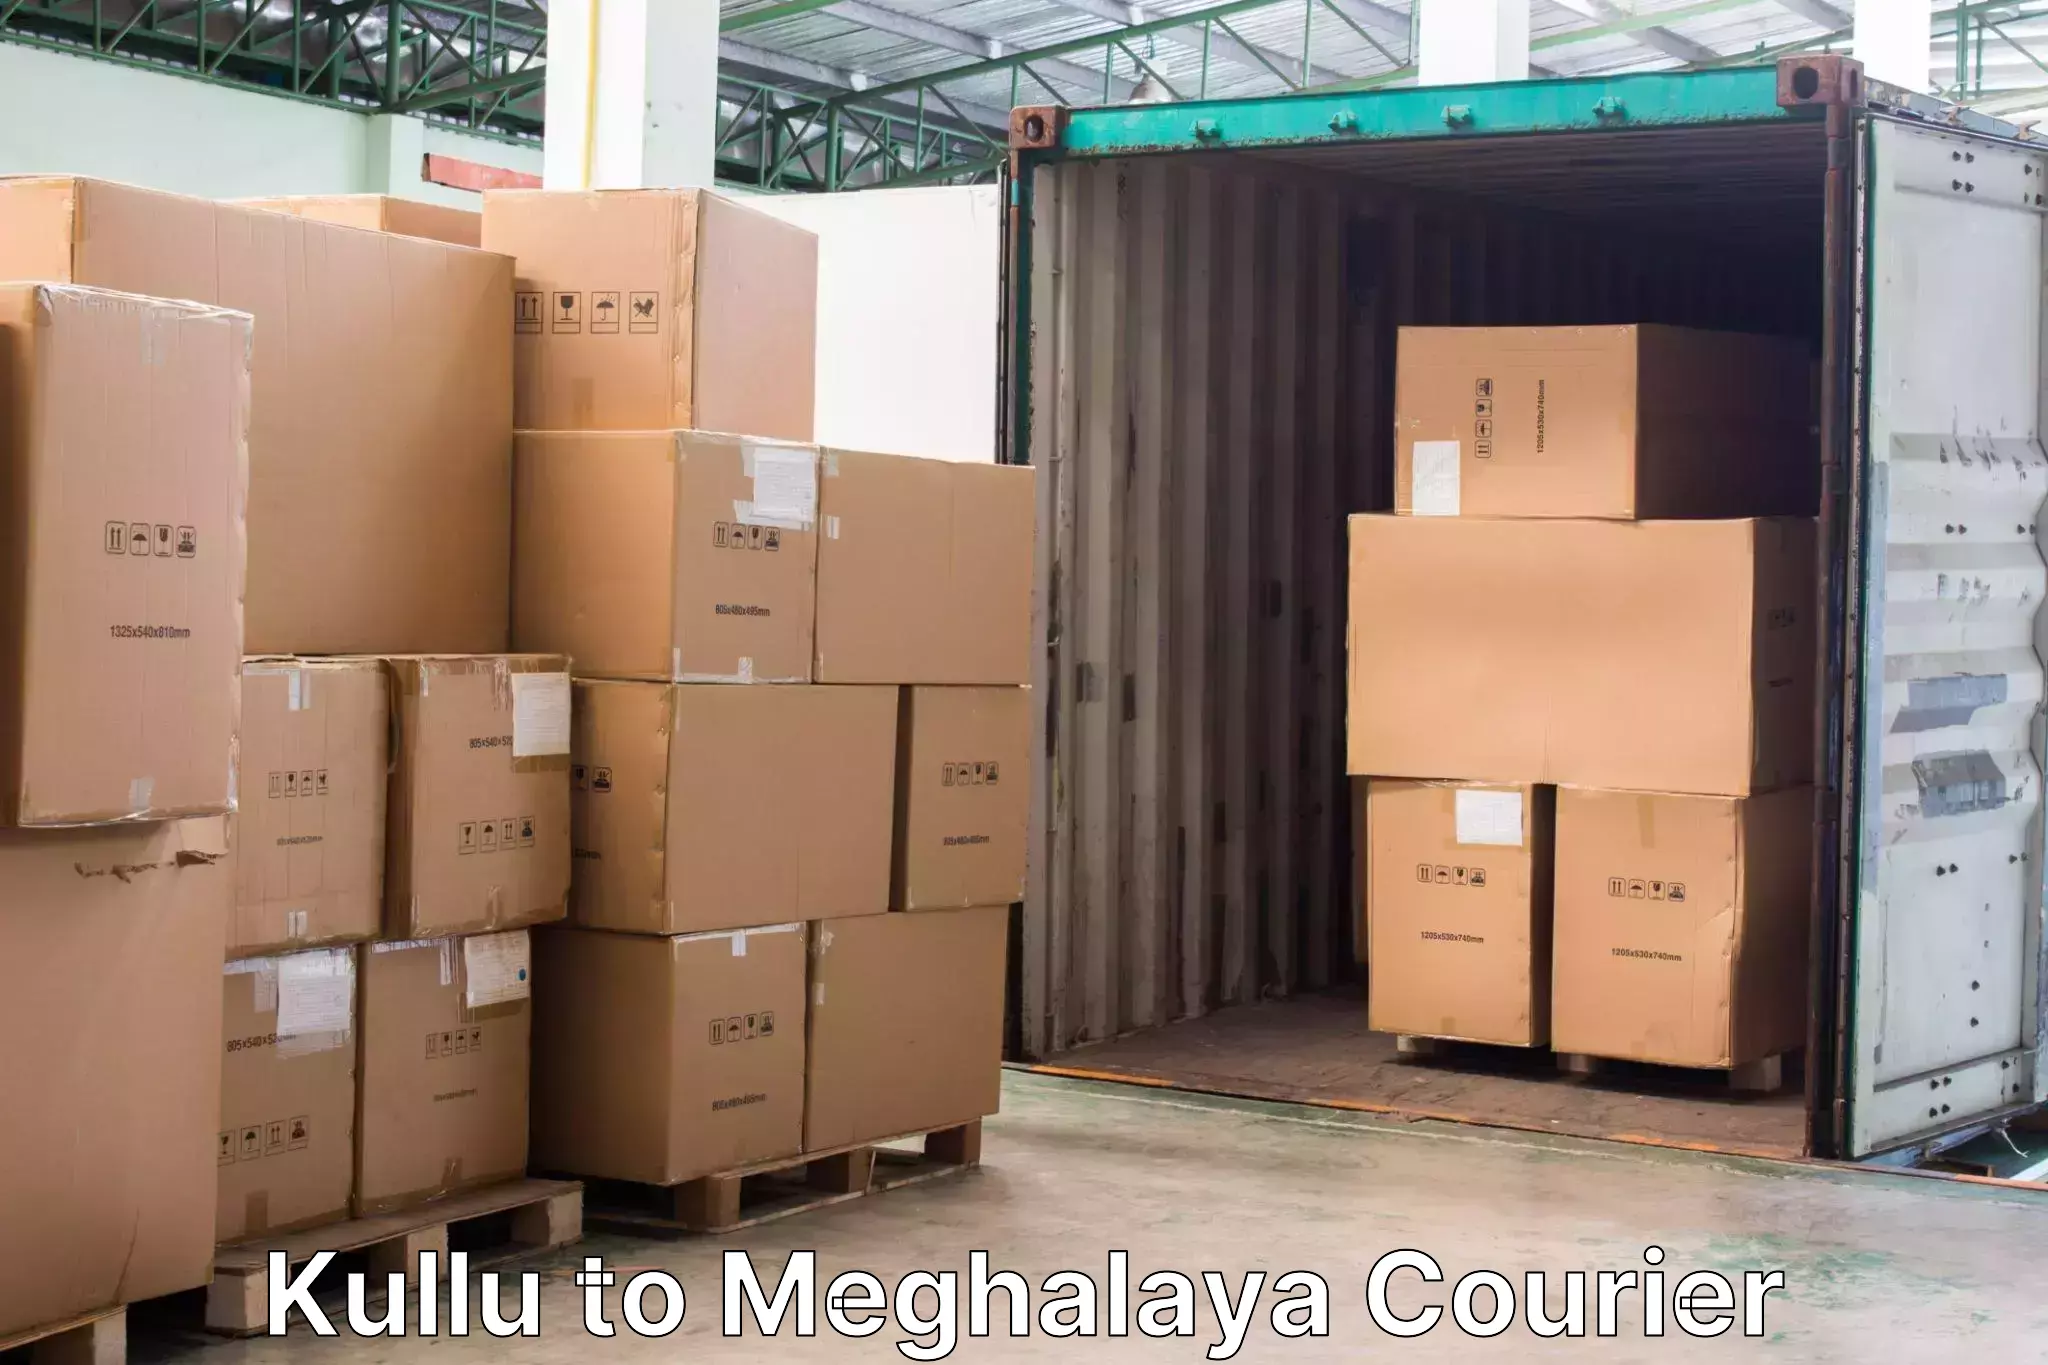 Baggage transport network Kullu to Meghalaya